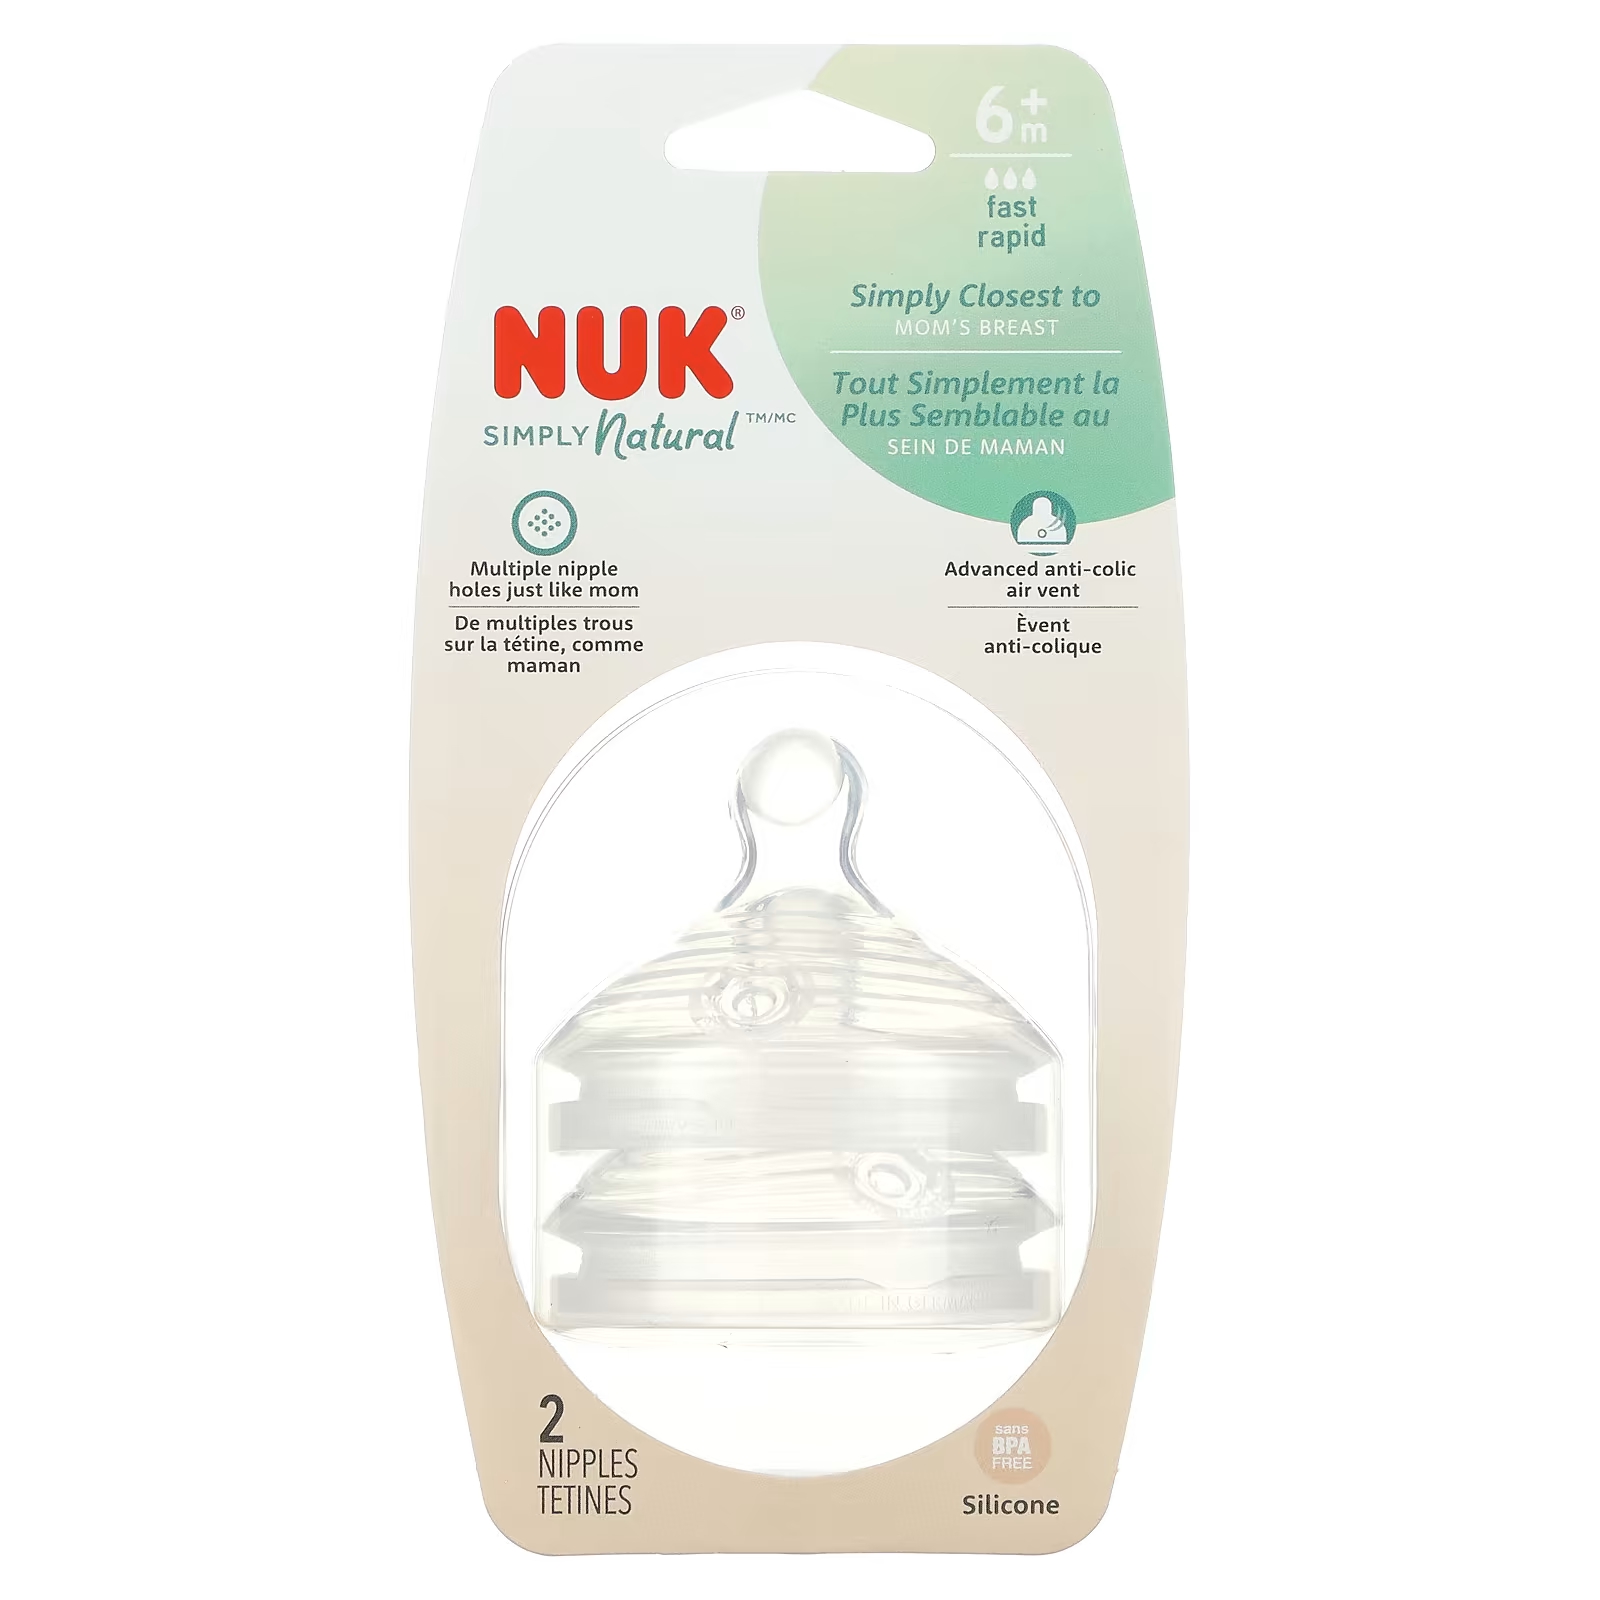 Соски NUK Simply Natural от 6 месяцев nuk simply natural соски от 1 месяца со средней степенью текучести 2 соски